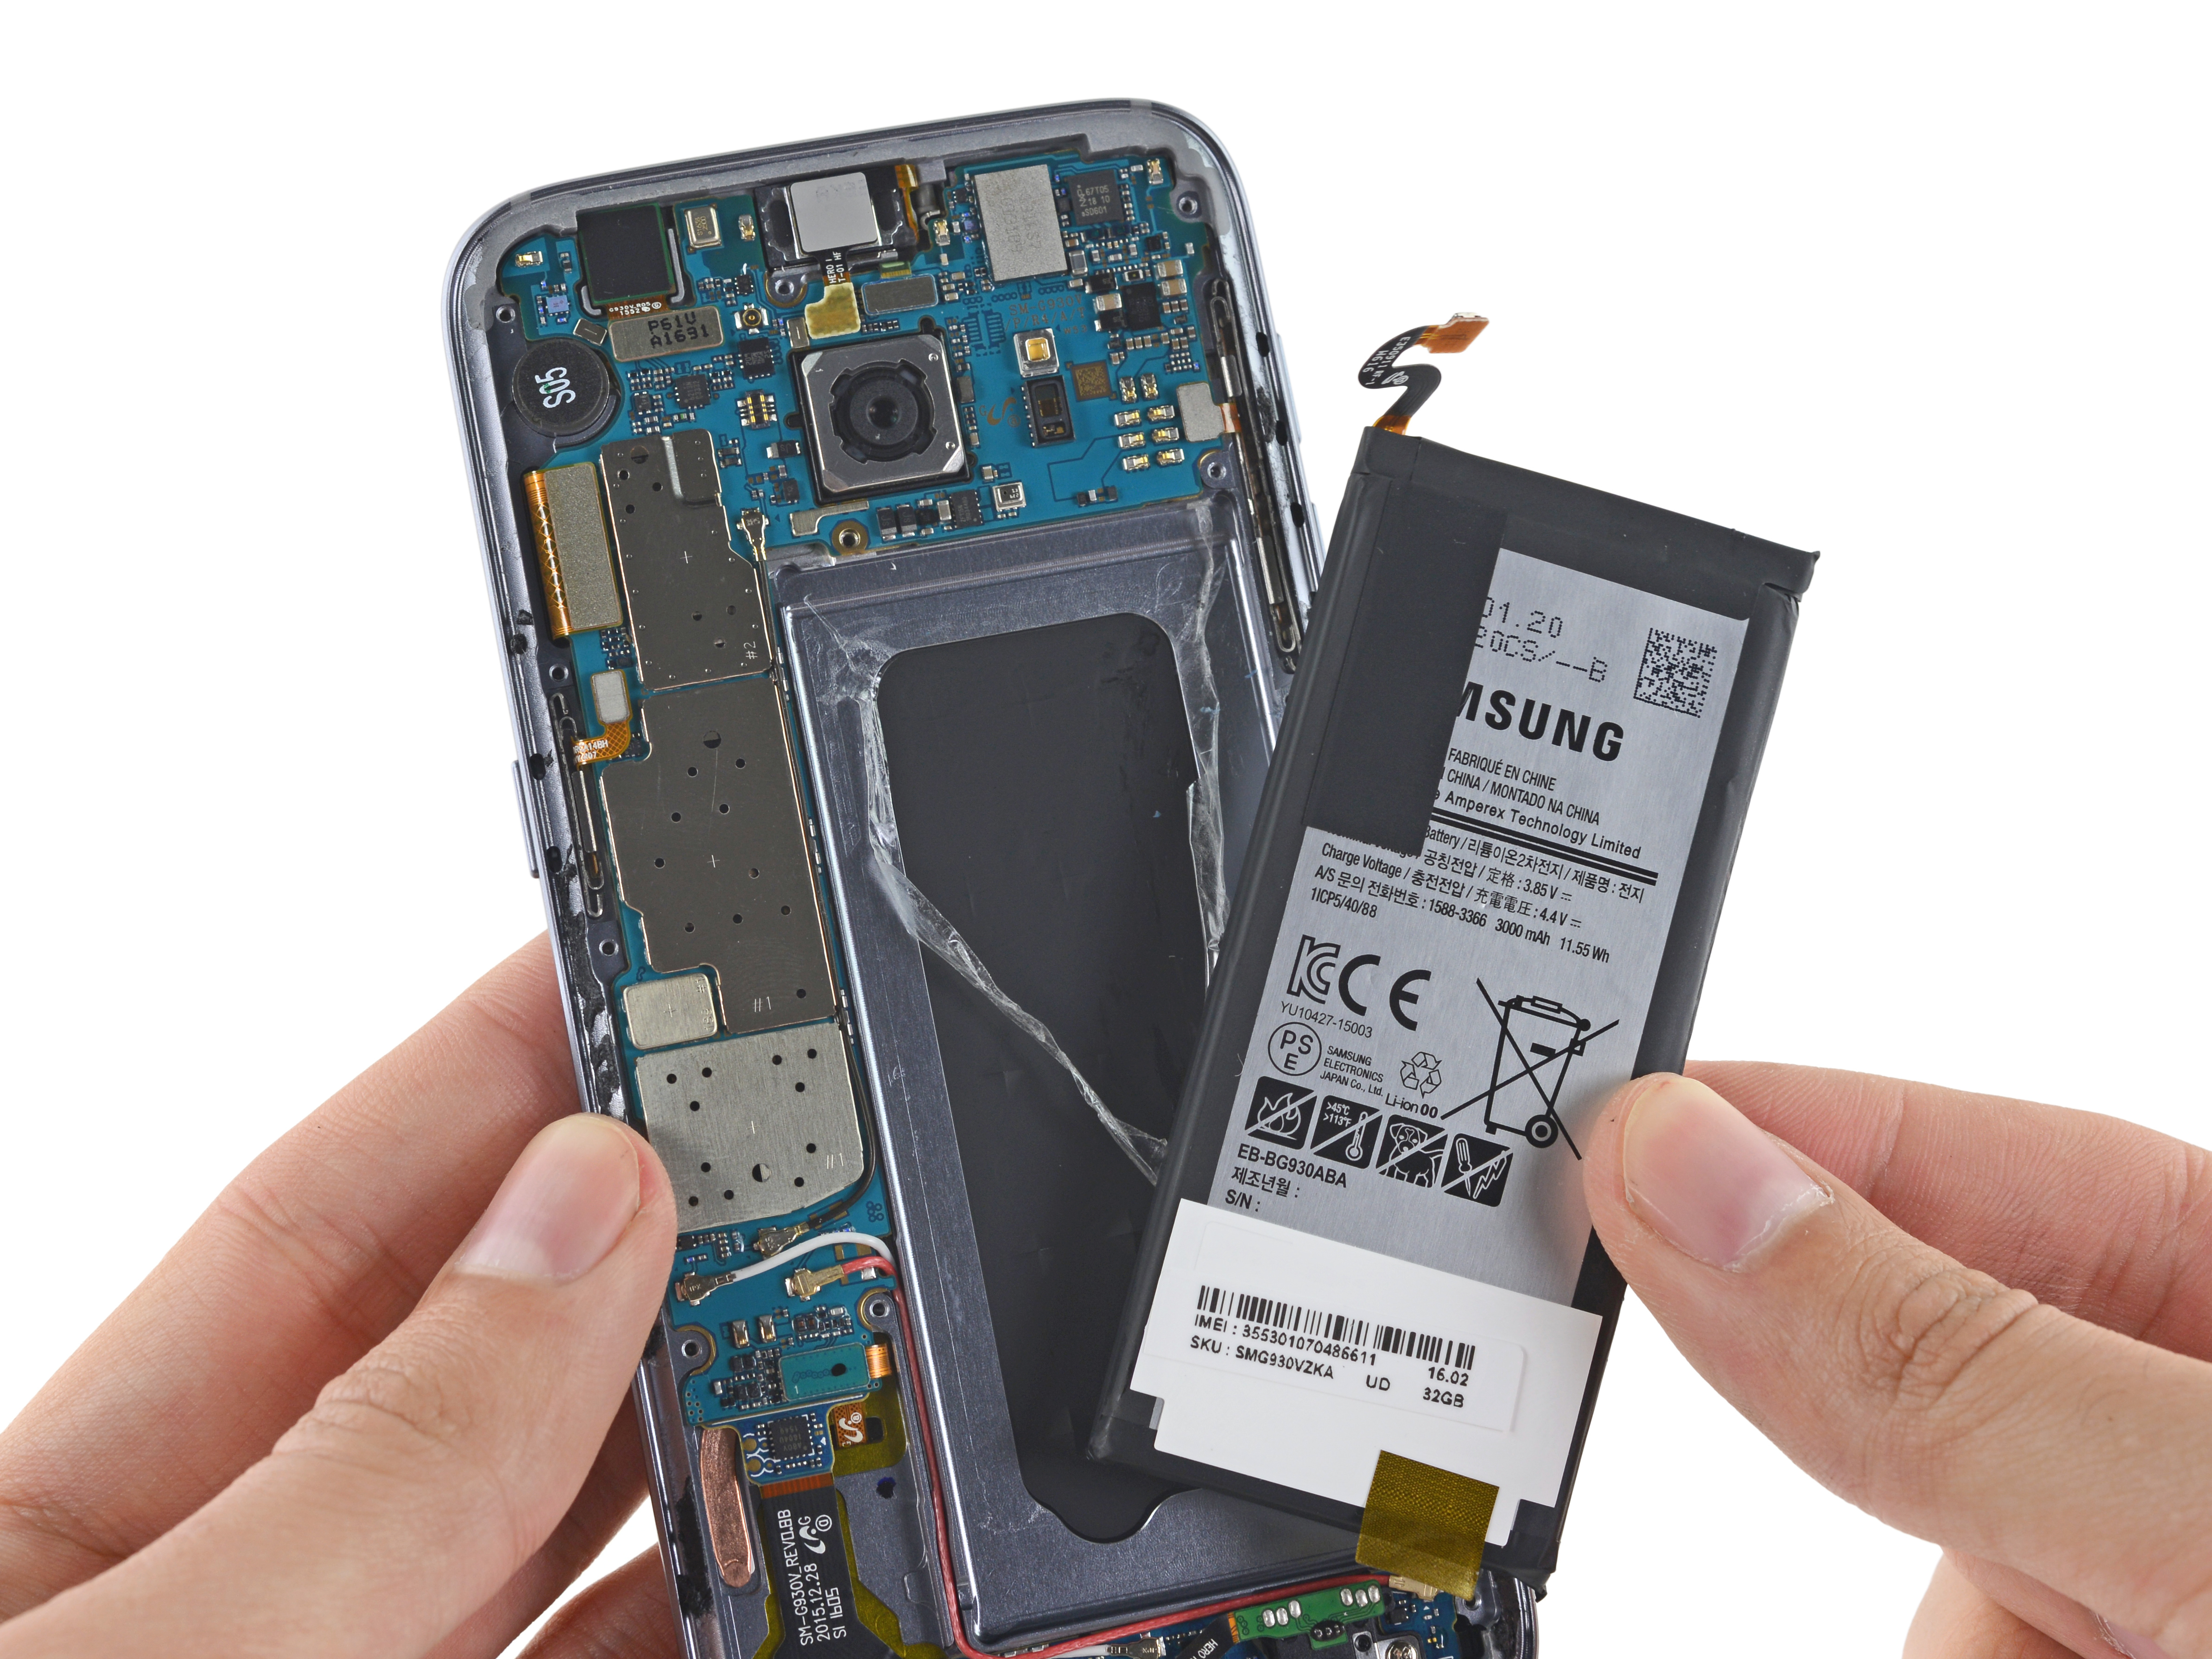 Купить Батарею Для Телефона Samsung Galaxy